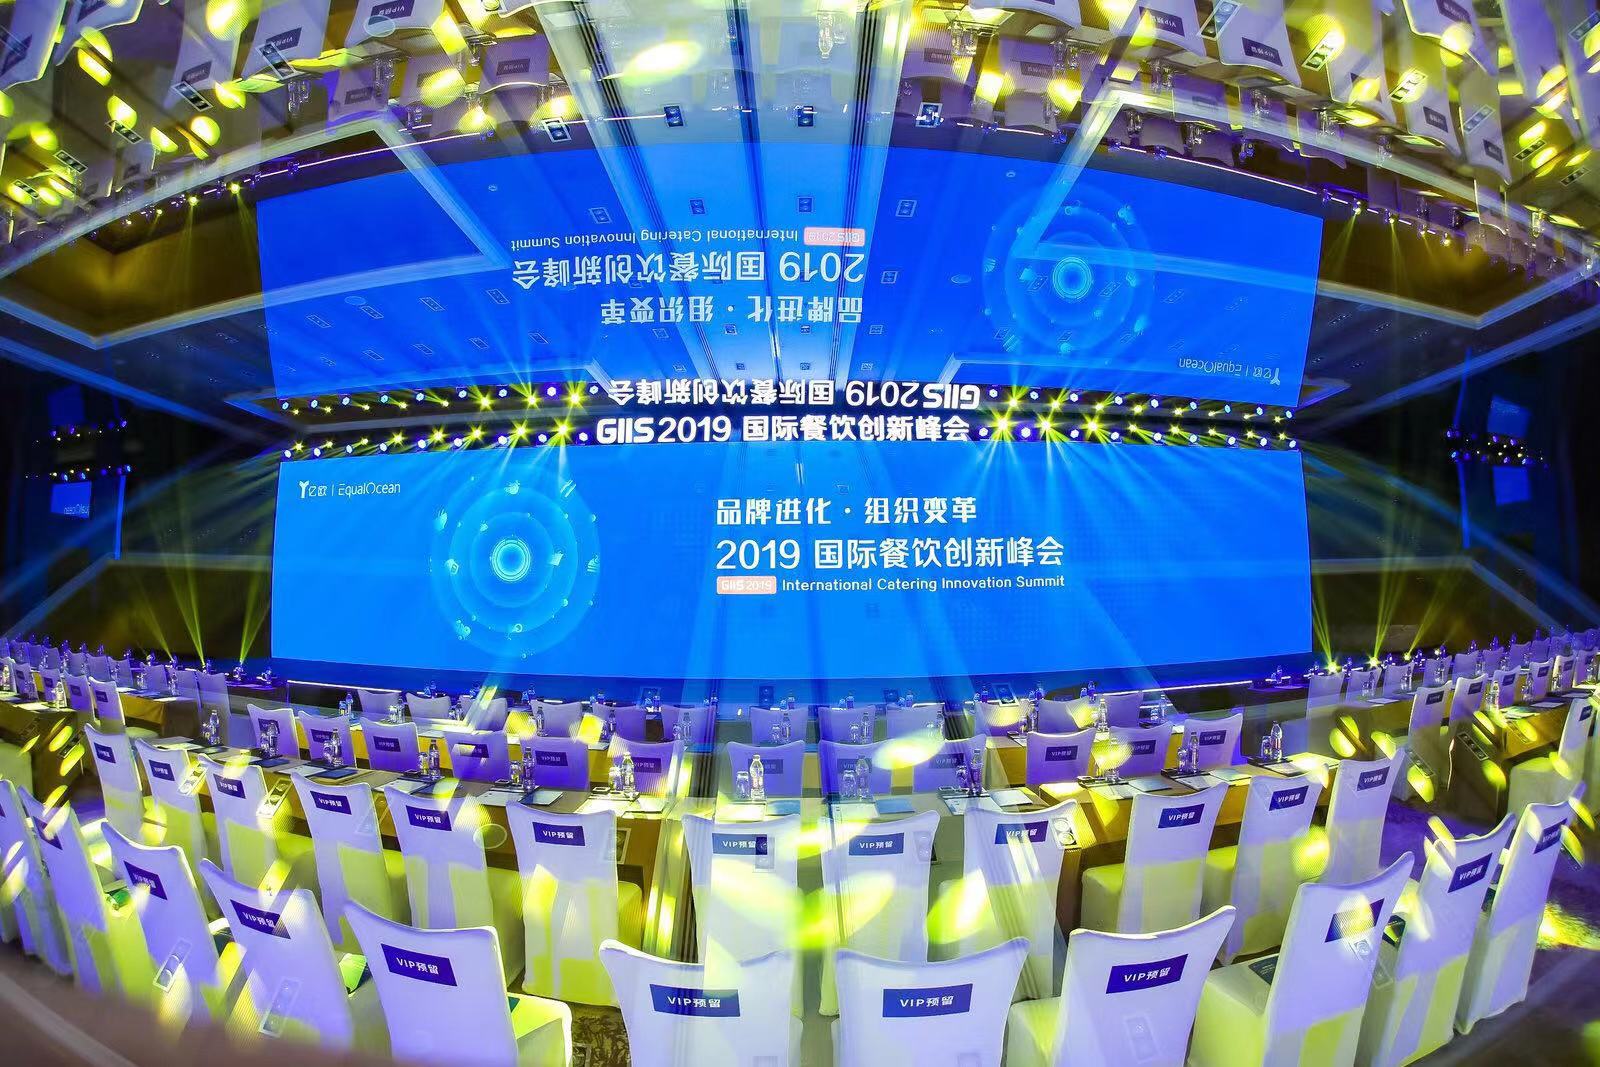 GIIS 2019国际餐饮创新峰会北京圆满举办，大咖共话餐饮新方向